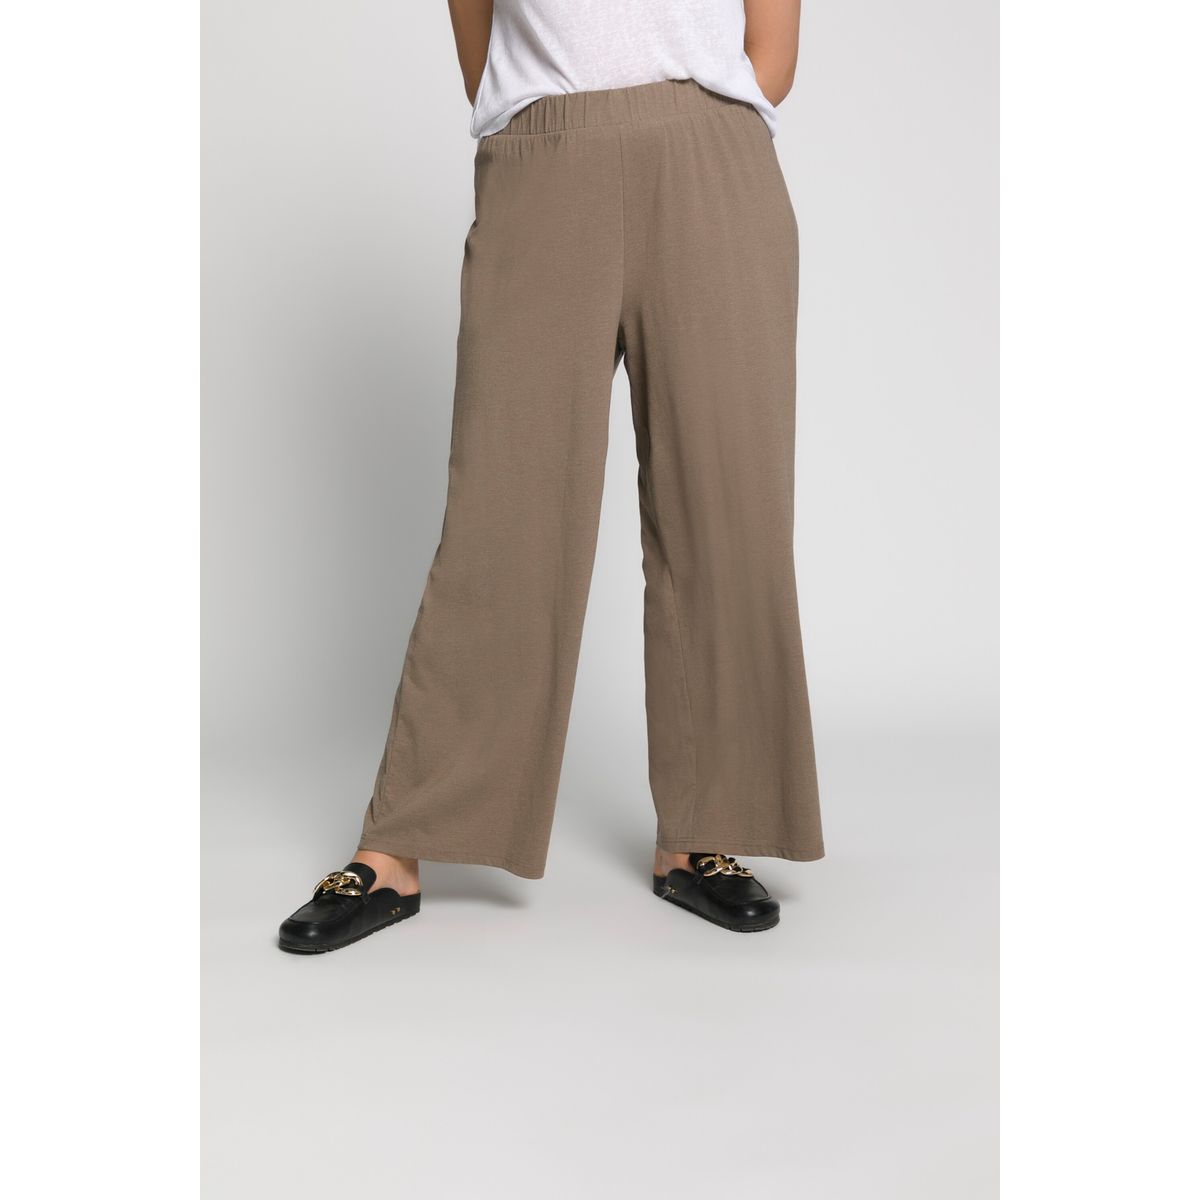 Pantalon en jersey brun motif ray\u00e9 style classique Mode Pantalons Pantalons en jersey 